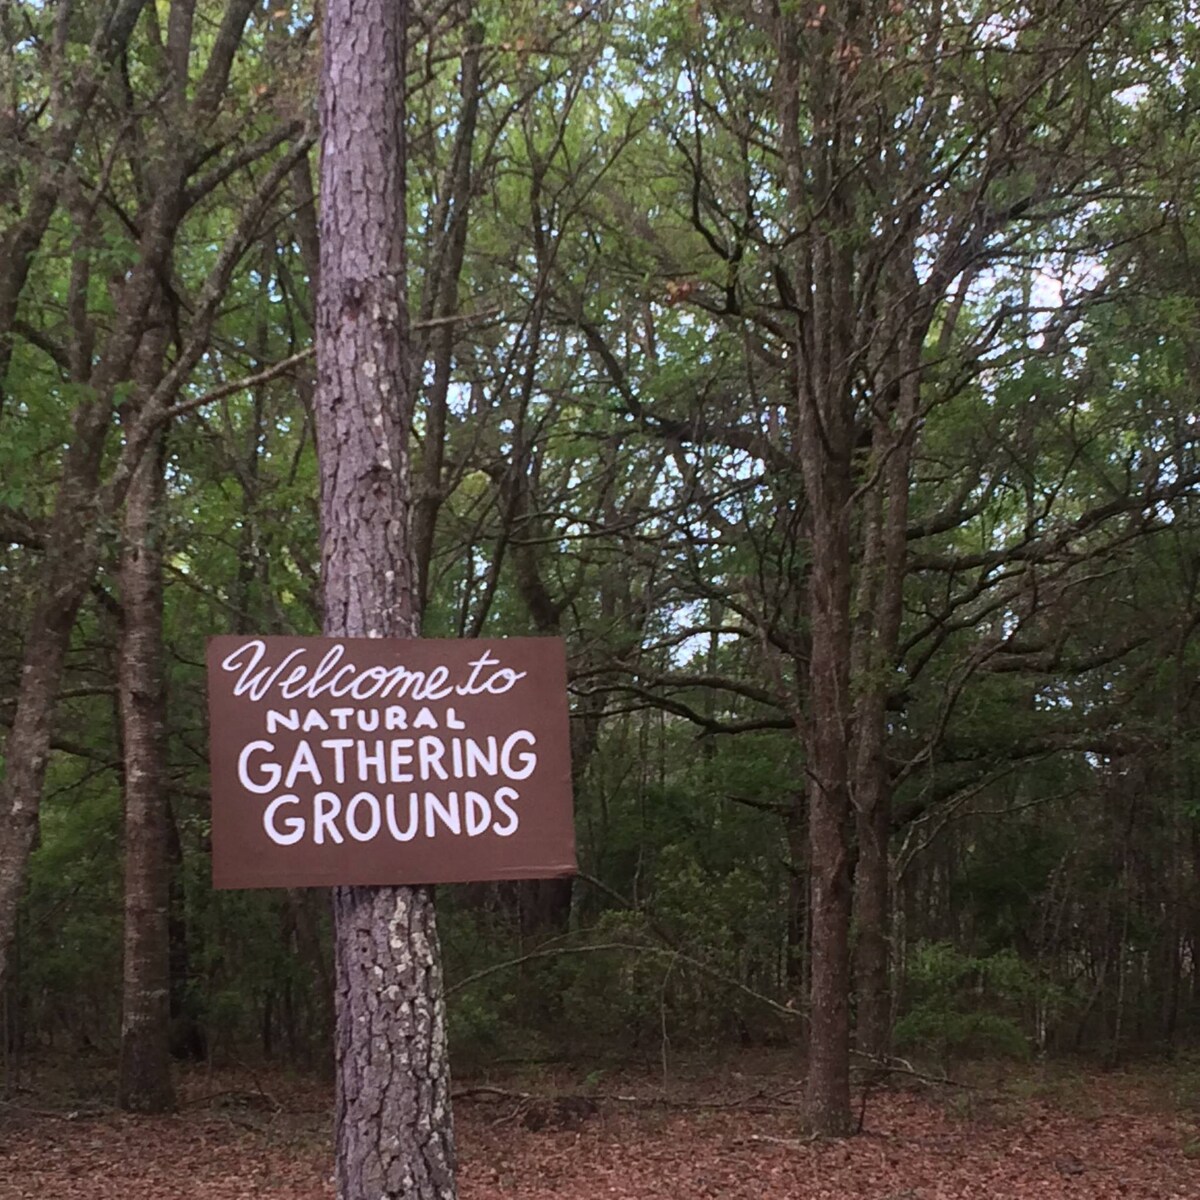 CAMPING at Natural Gathering Grounds